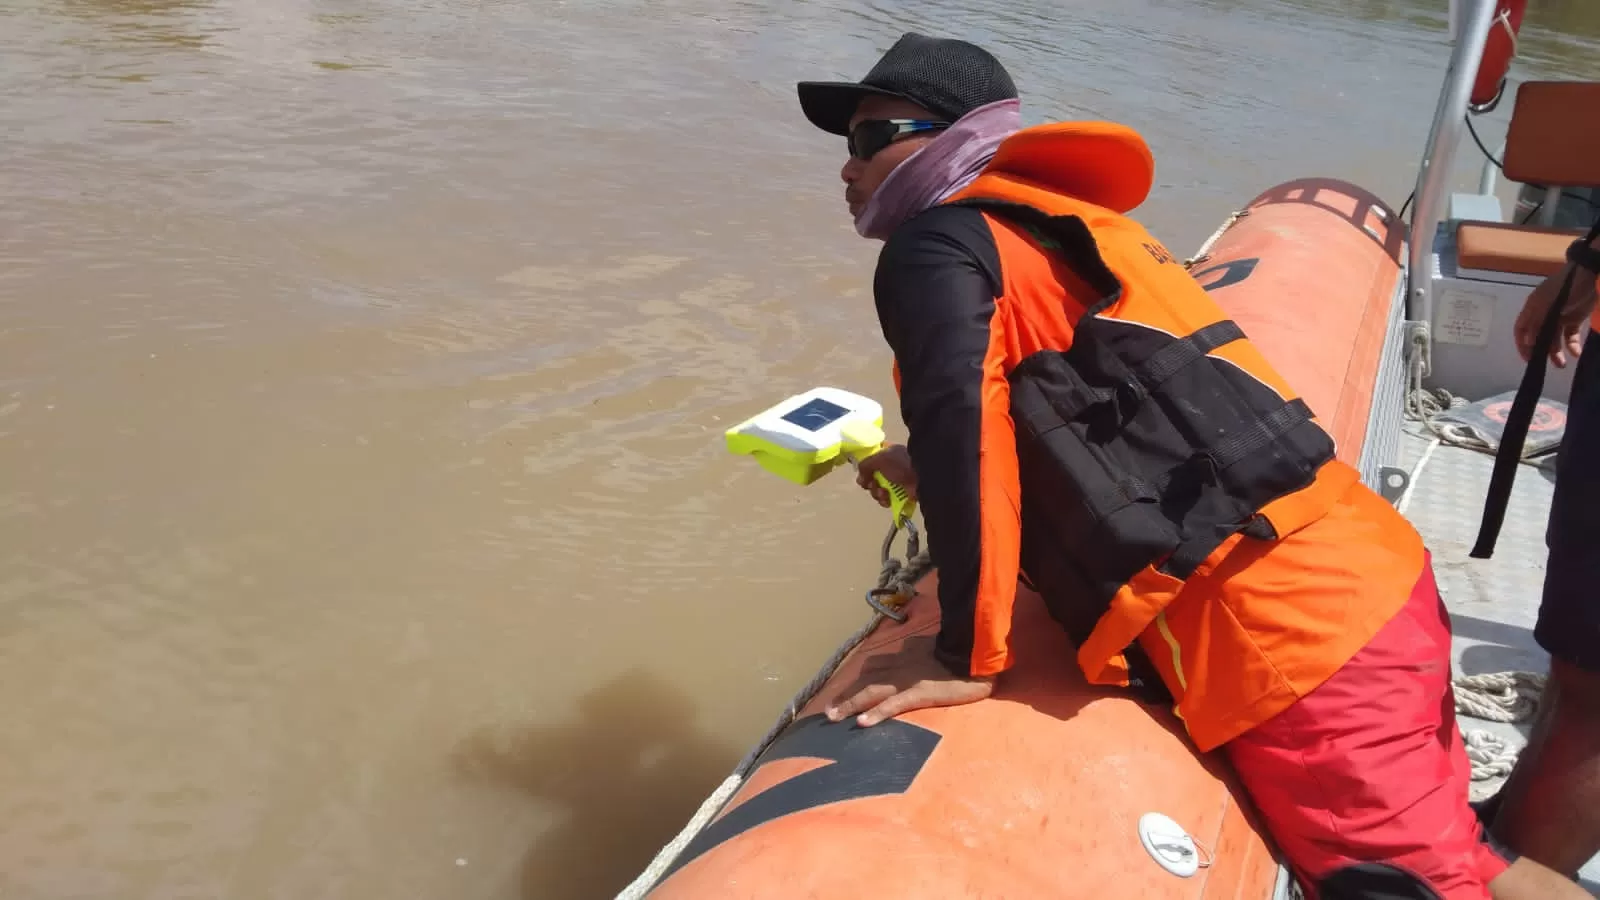 DILAKUKAN PENCARIAN. Personel SAR Tarakan mencoba menggunakan alat aqua eye dalam pencarian korban diduga tenggelam di Sungai Teluk Sanggan, Kabupaten Malinau, Minggu (4/7).(SAR TARAKAN FOR HRK)